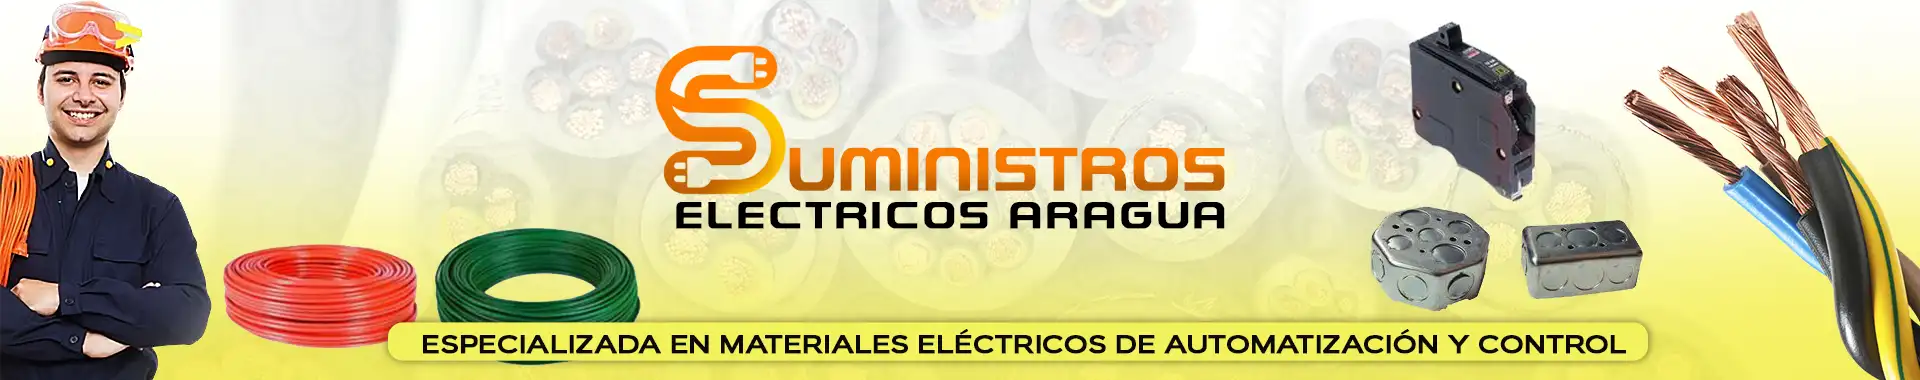 Imagen 1 del perfil de Suministros Eléctricos Aragua